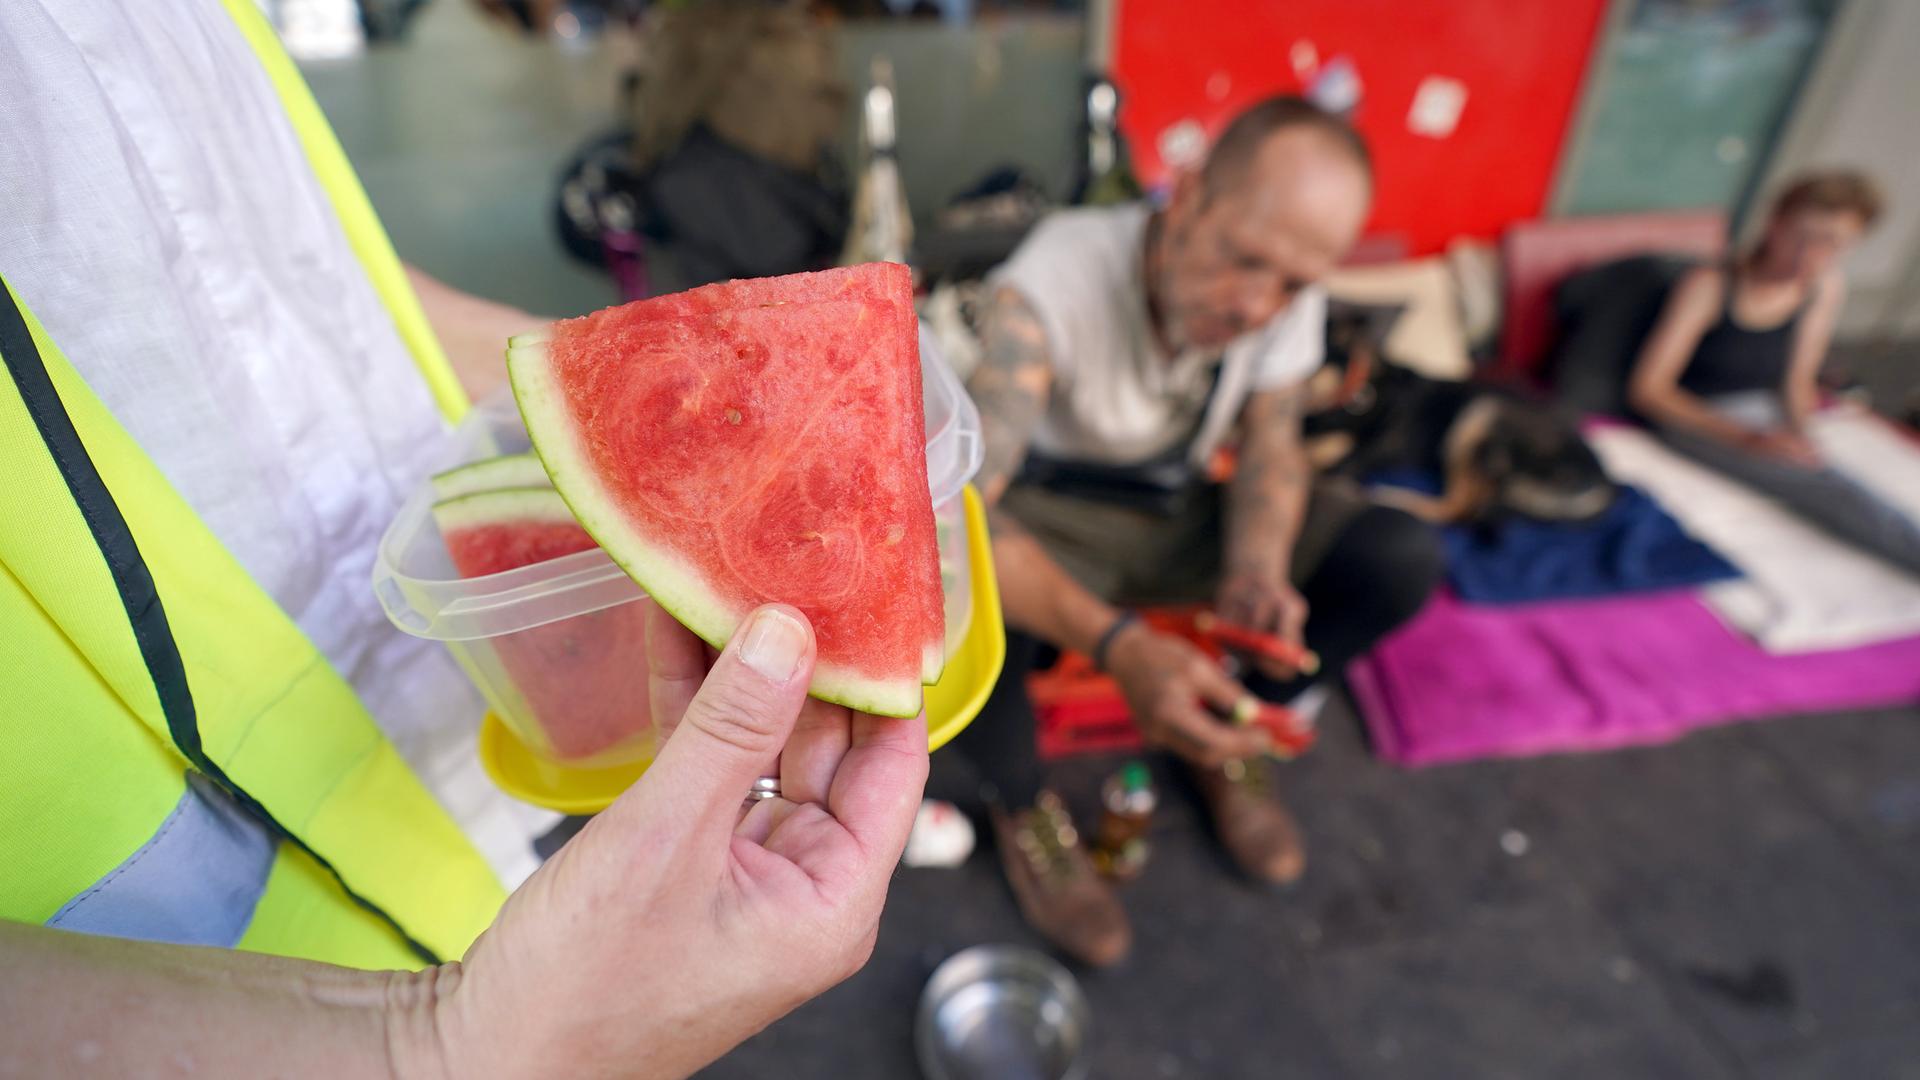 Nahaufnahme einer Hand, die Wassermelonenstücke an Obdachlose austeilt, die im Hintergrund unscharf zu sehen sind.